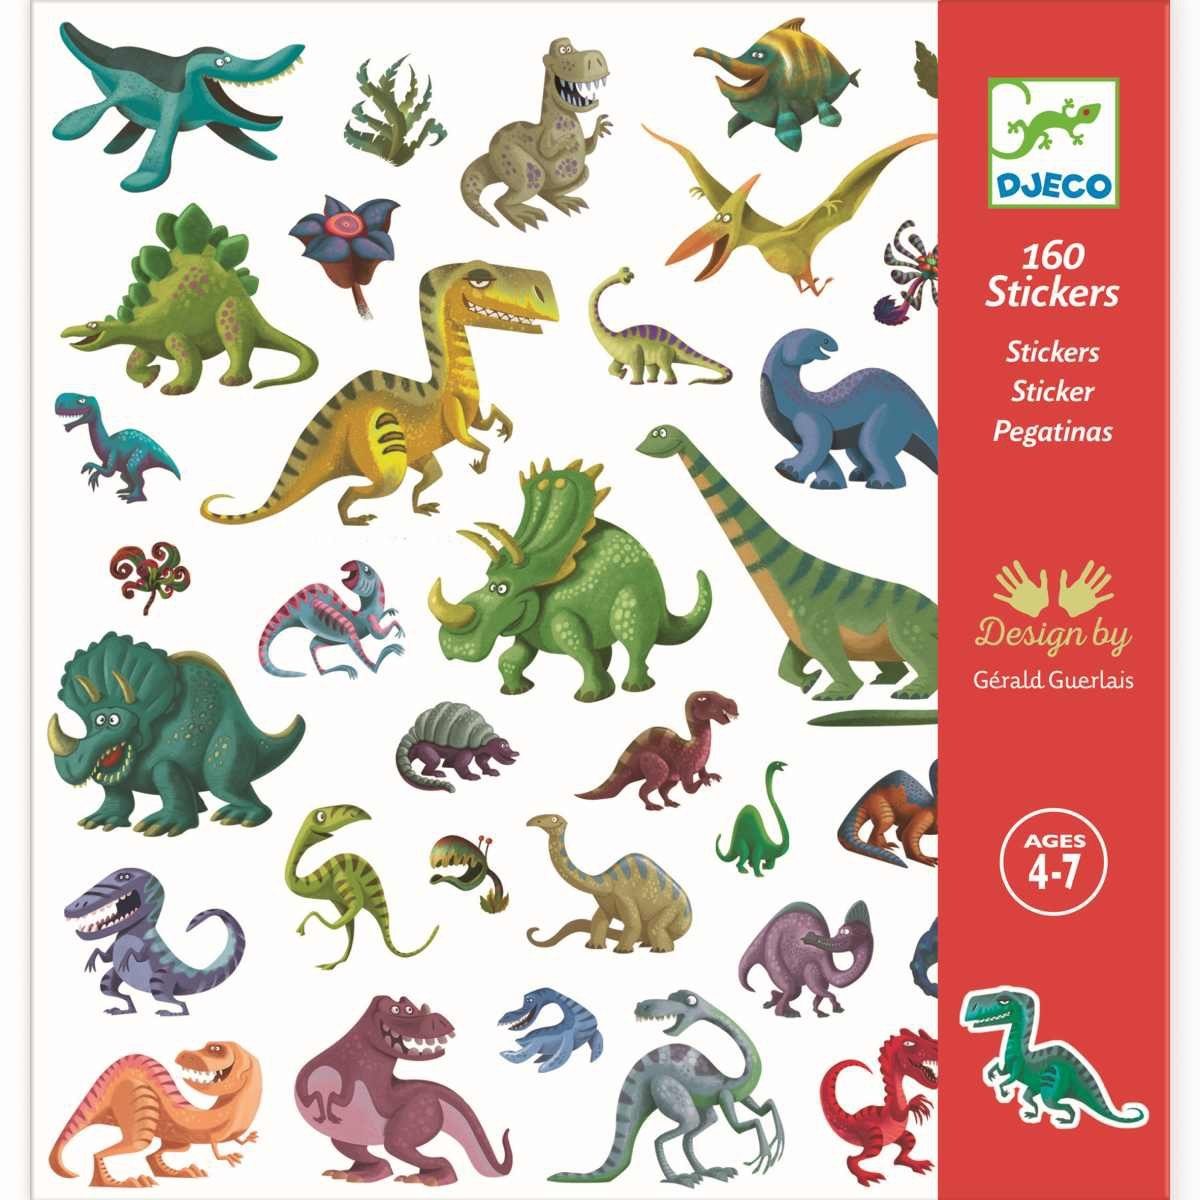 DJECO Sticker 160 DJECO Sticker für Kinder ab 4 Jahren mit tollen Motiven